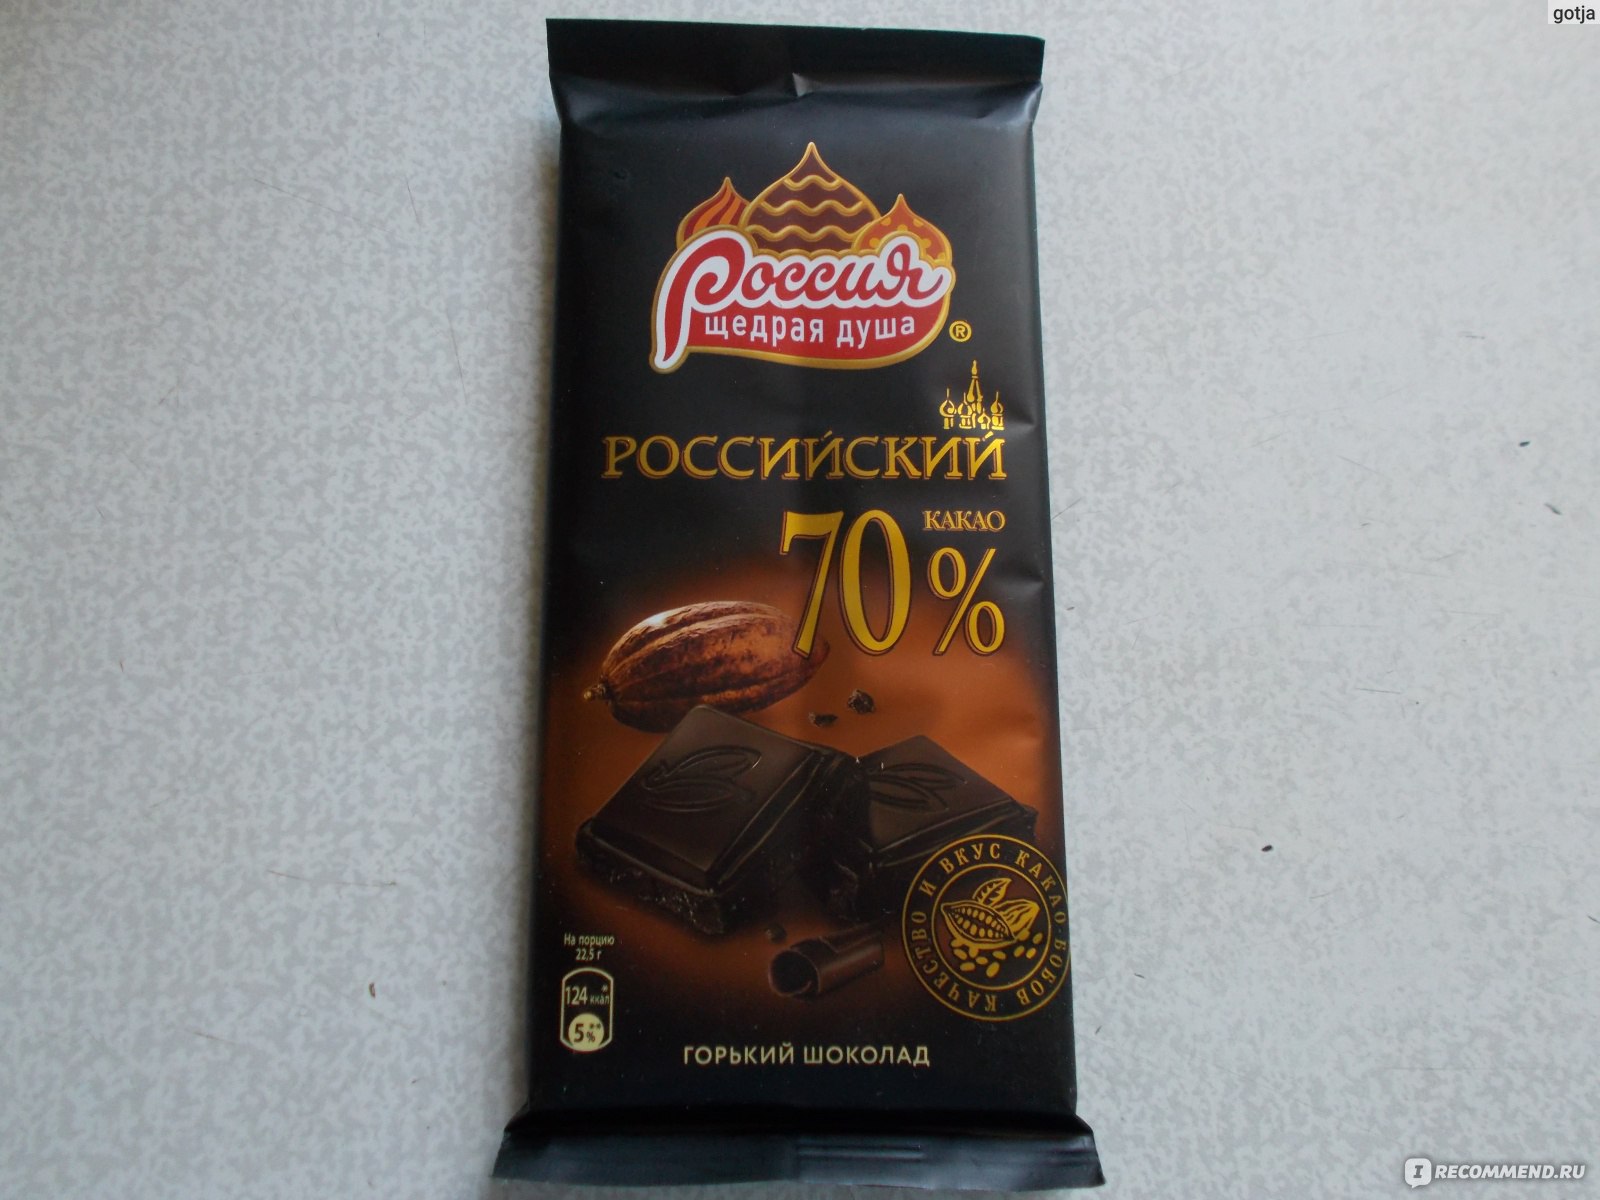 Шоколад Горько Сладкий